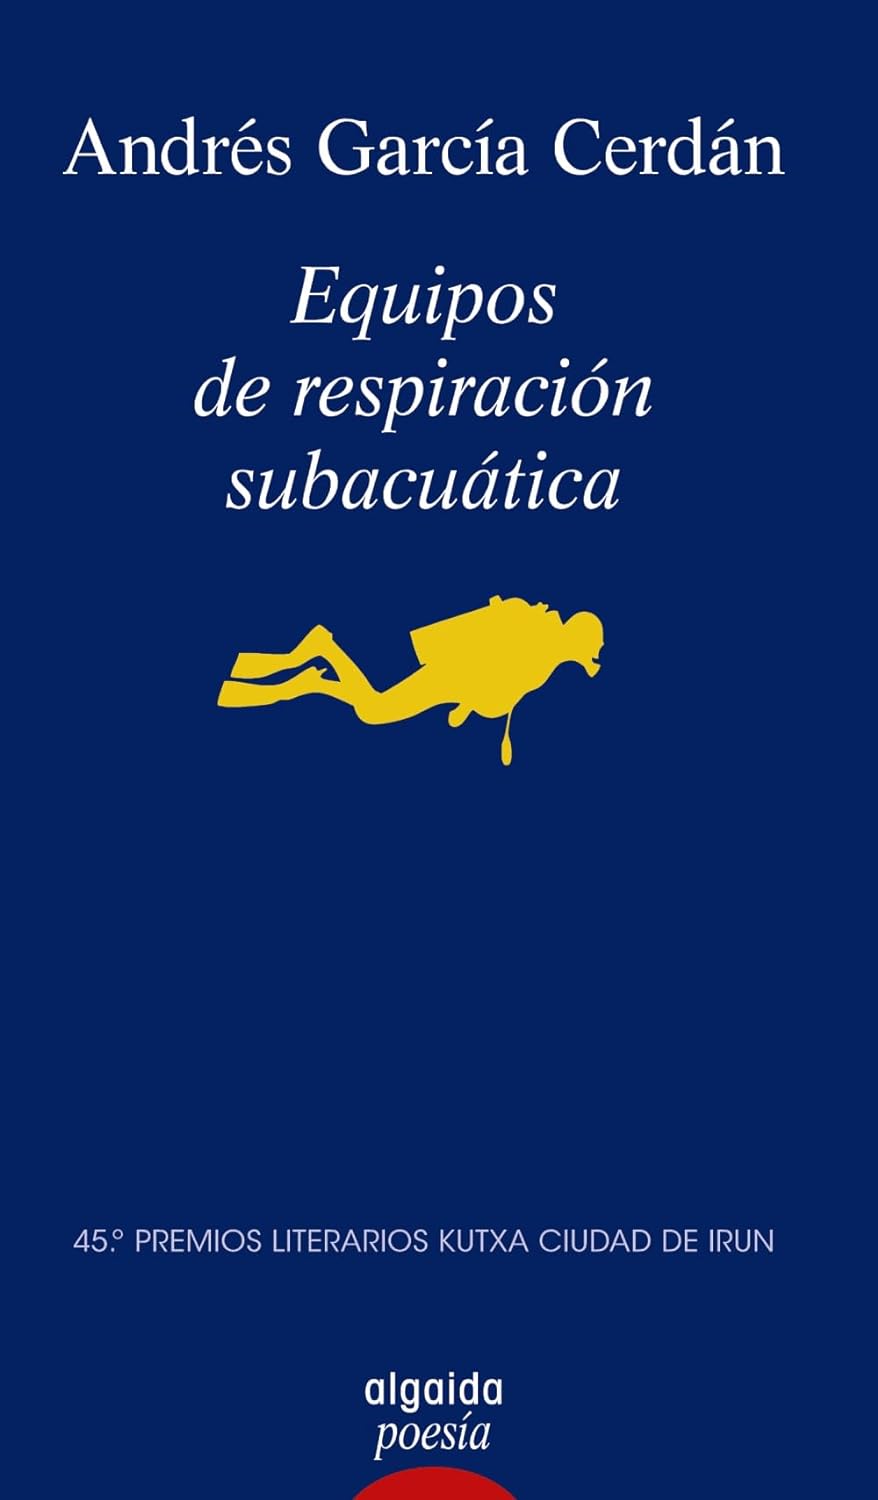 6 poemas de Equipos de respiración subacuática, de Andrés García Cerdán